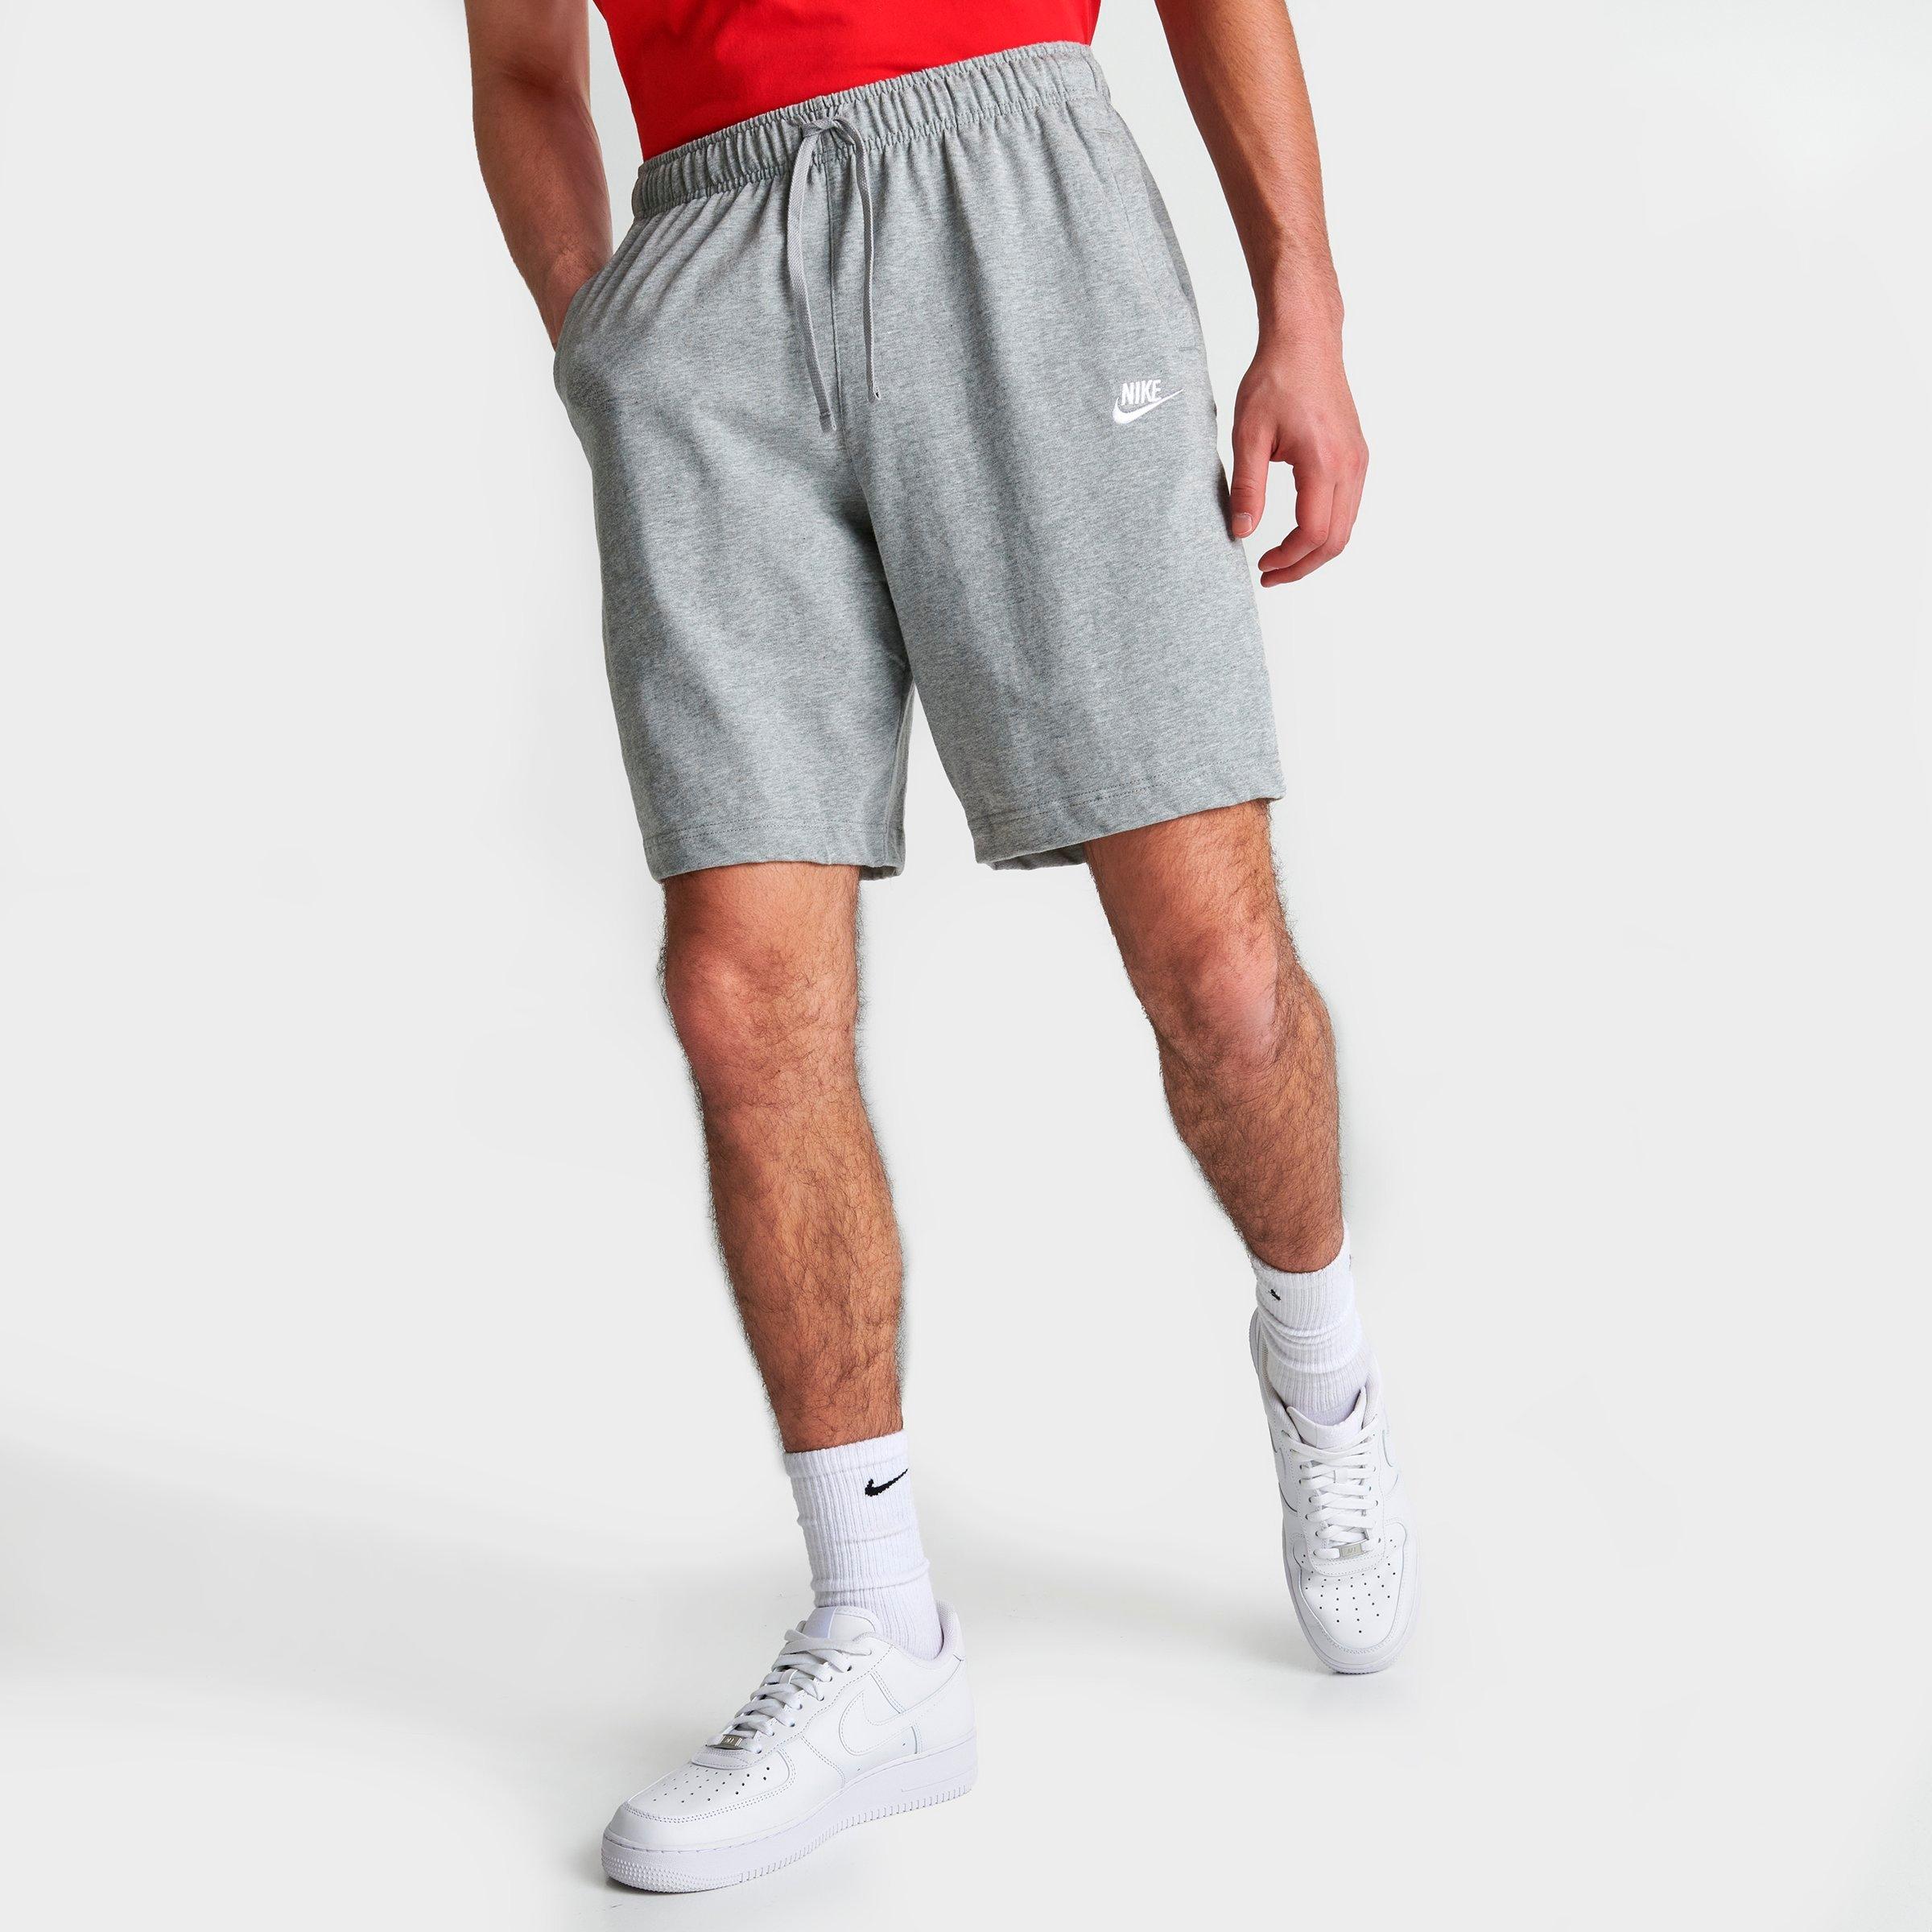 nike men's shorts sportswear